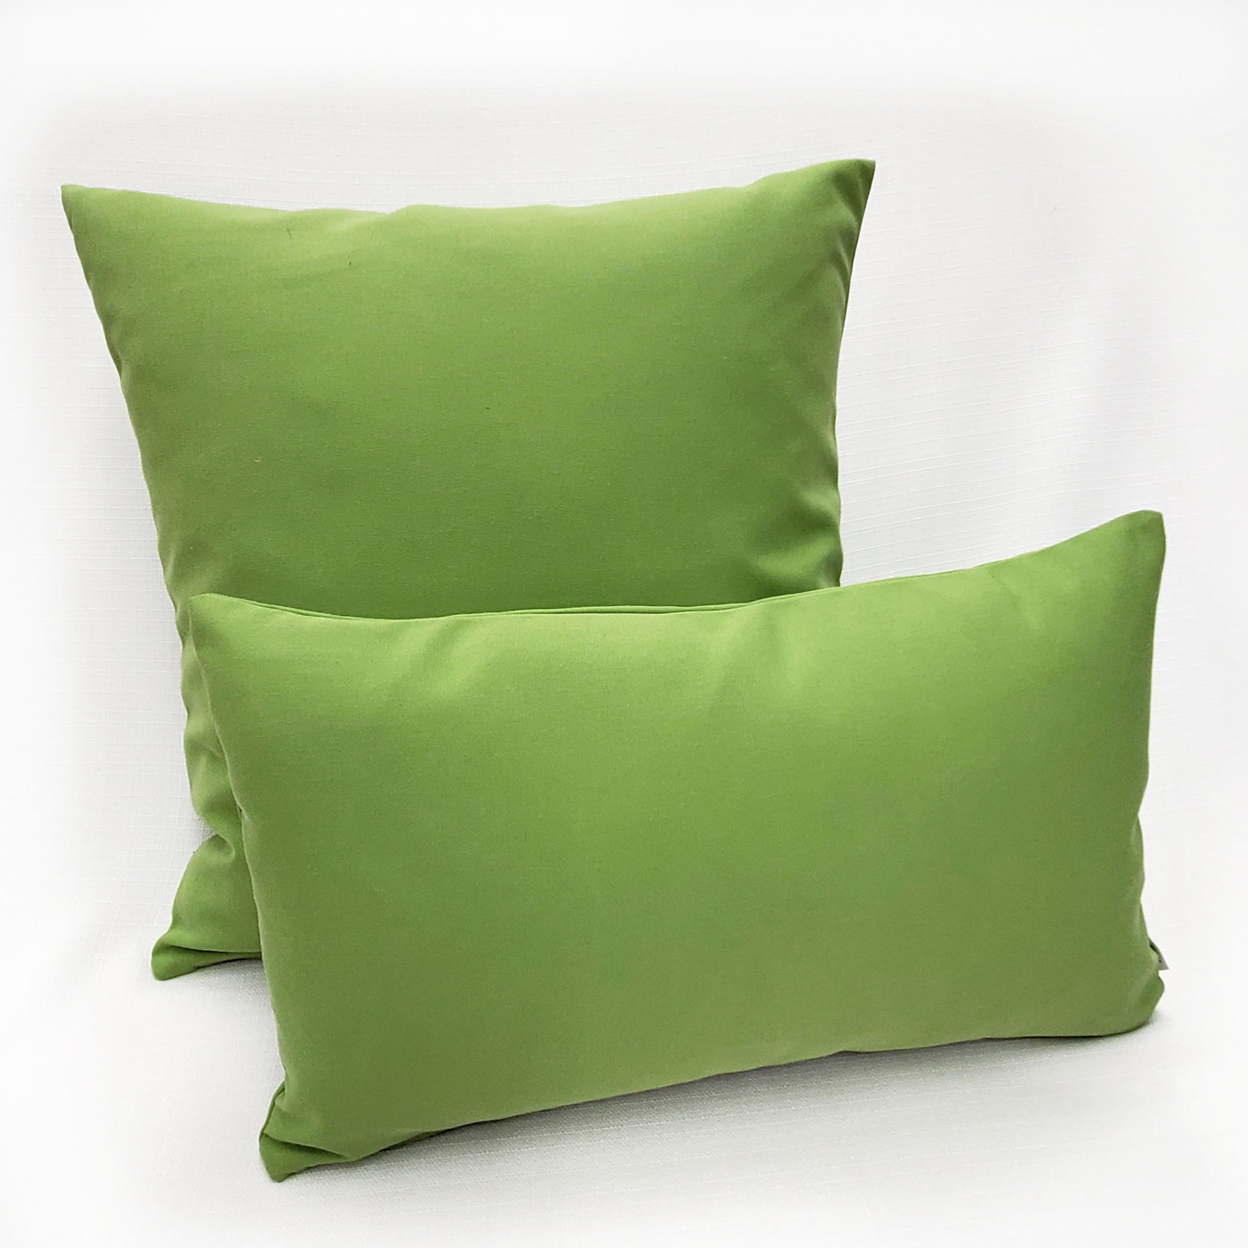 Sunbrella Ginko Green Outdoor Pillow 12x19, With Polyfill Insert